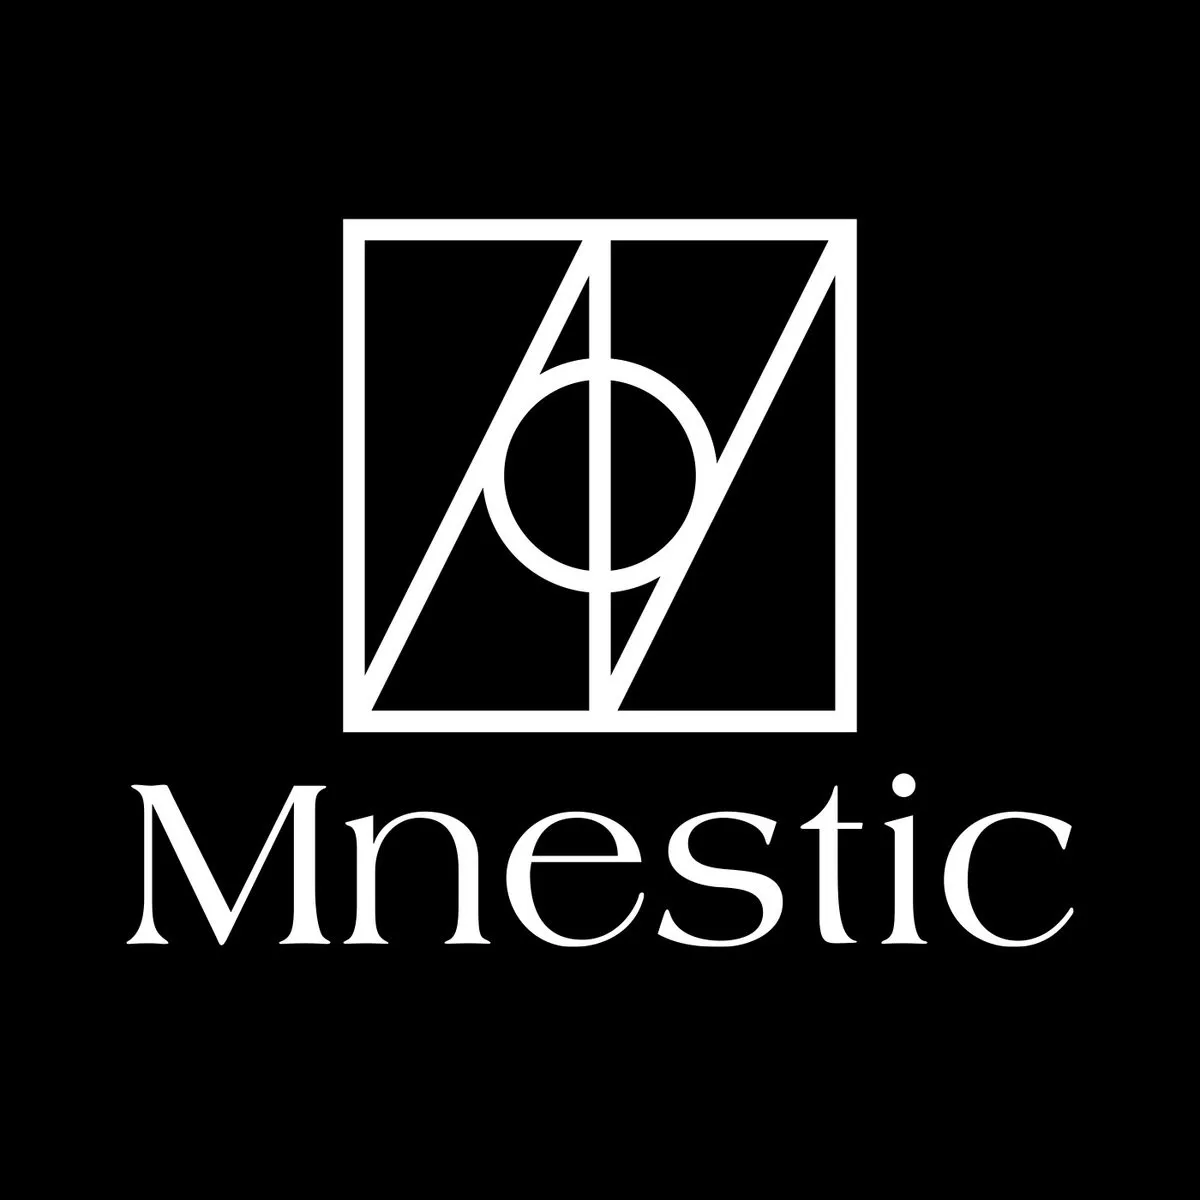 Mnestic Records